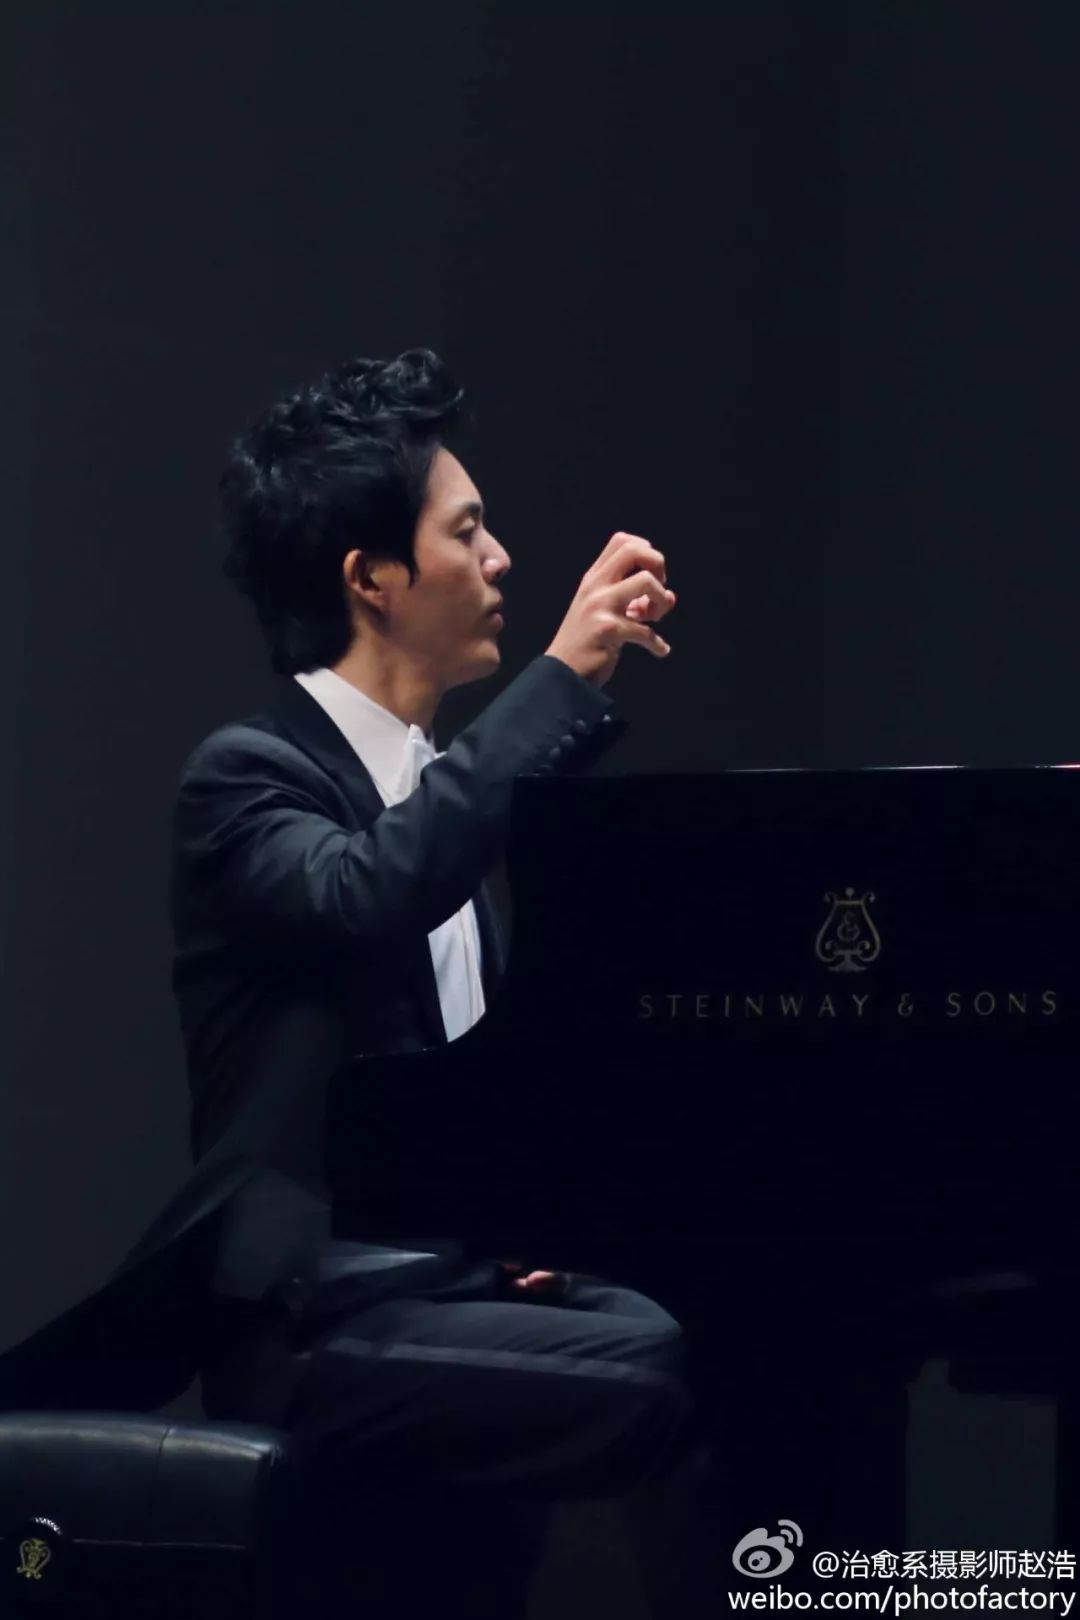 李云迪:你们都叫我"钢琴王子"却不知道我因长期过度练琴,而手指生老茧